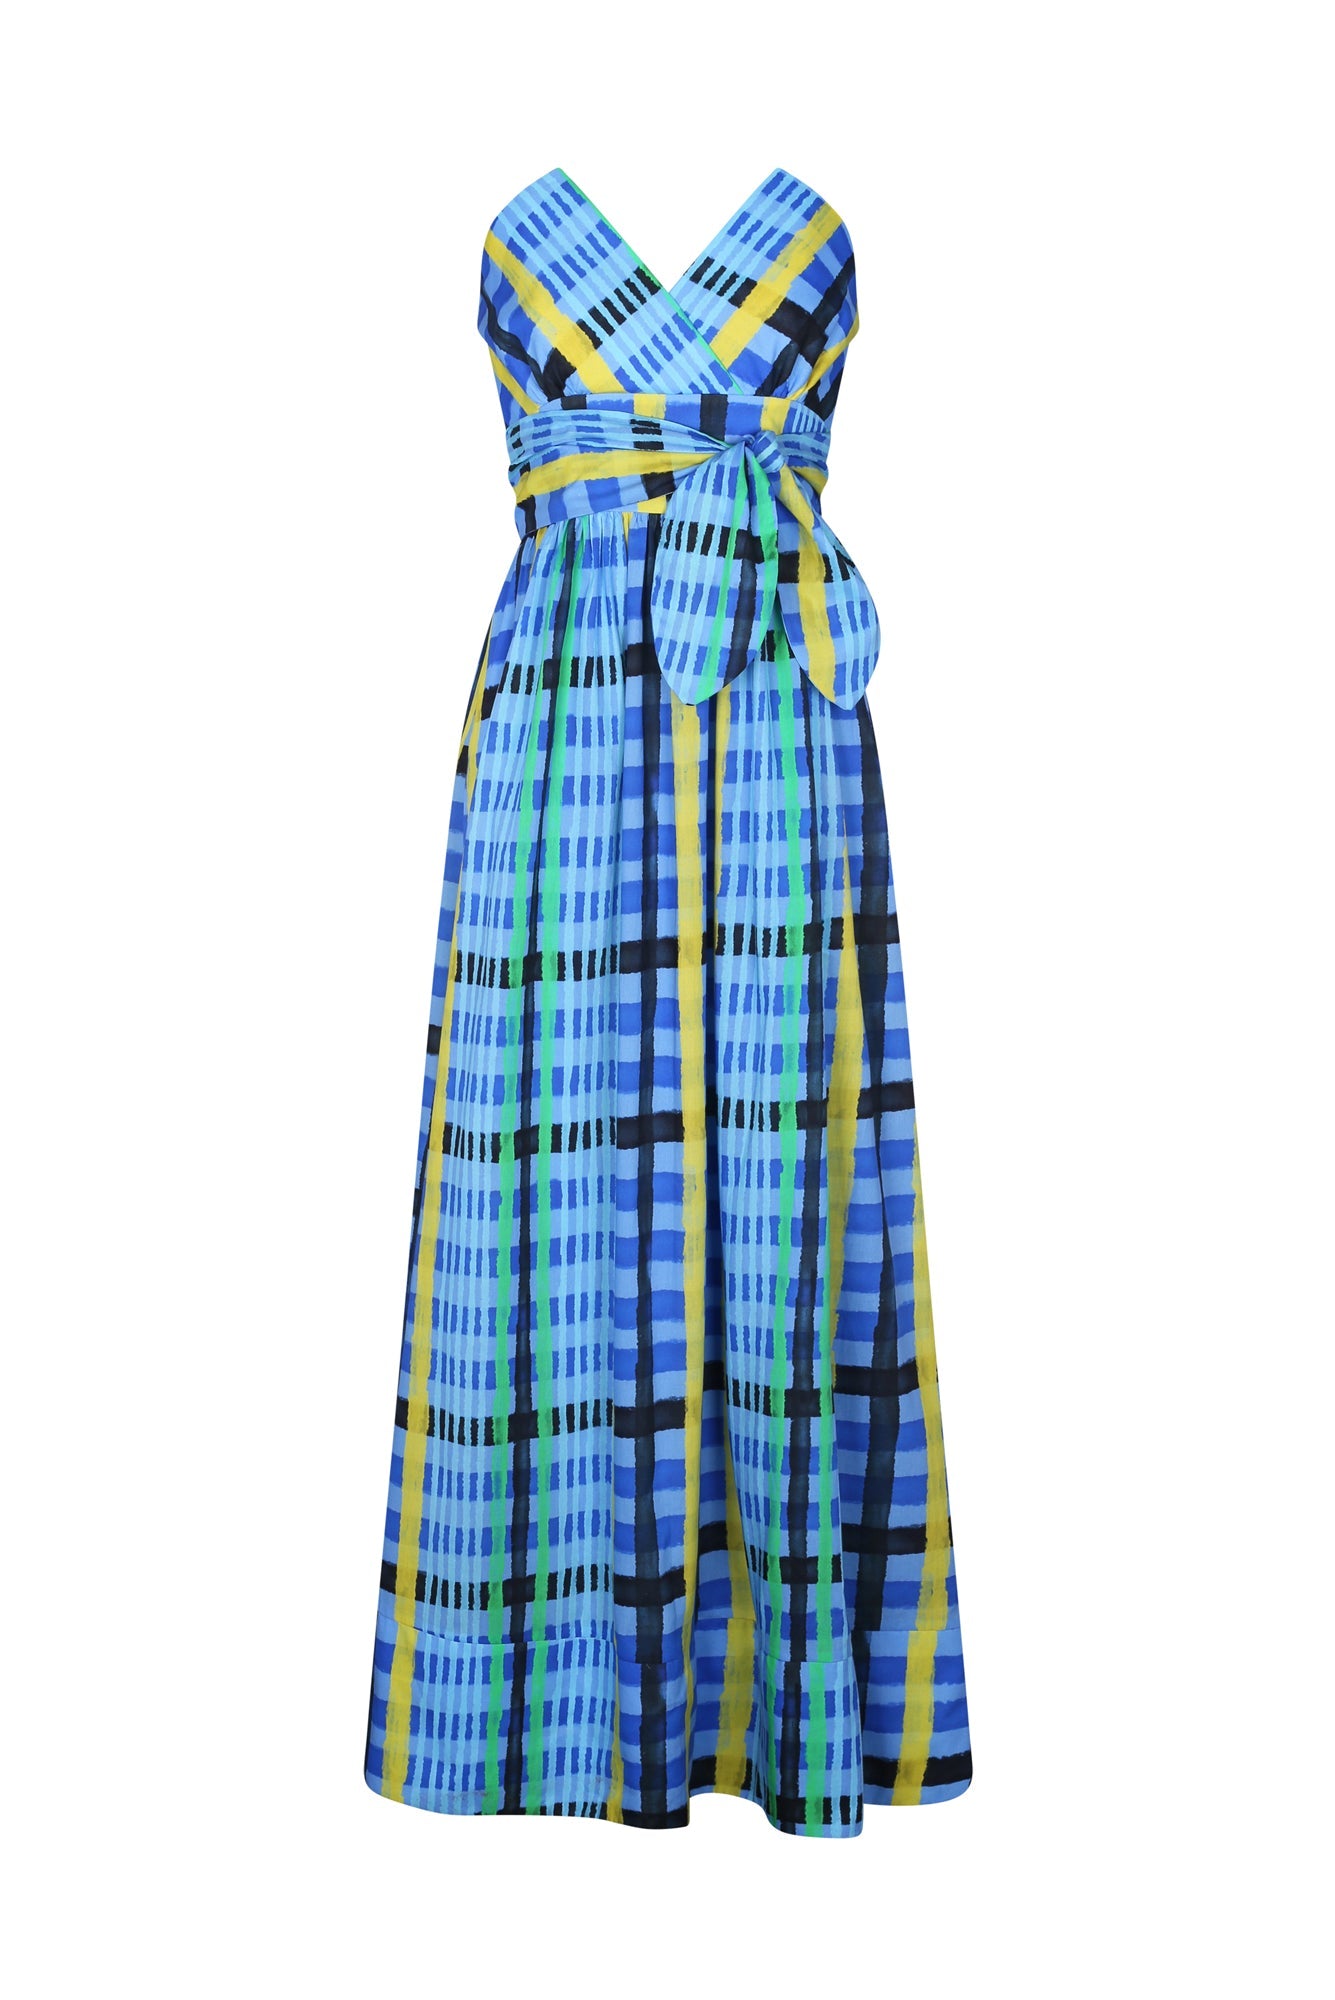 Charro Dress in Tartan Charra Azul Print